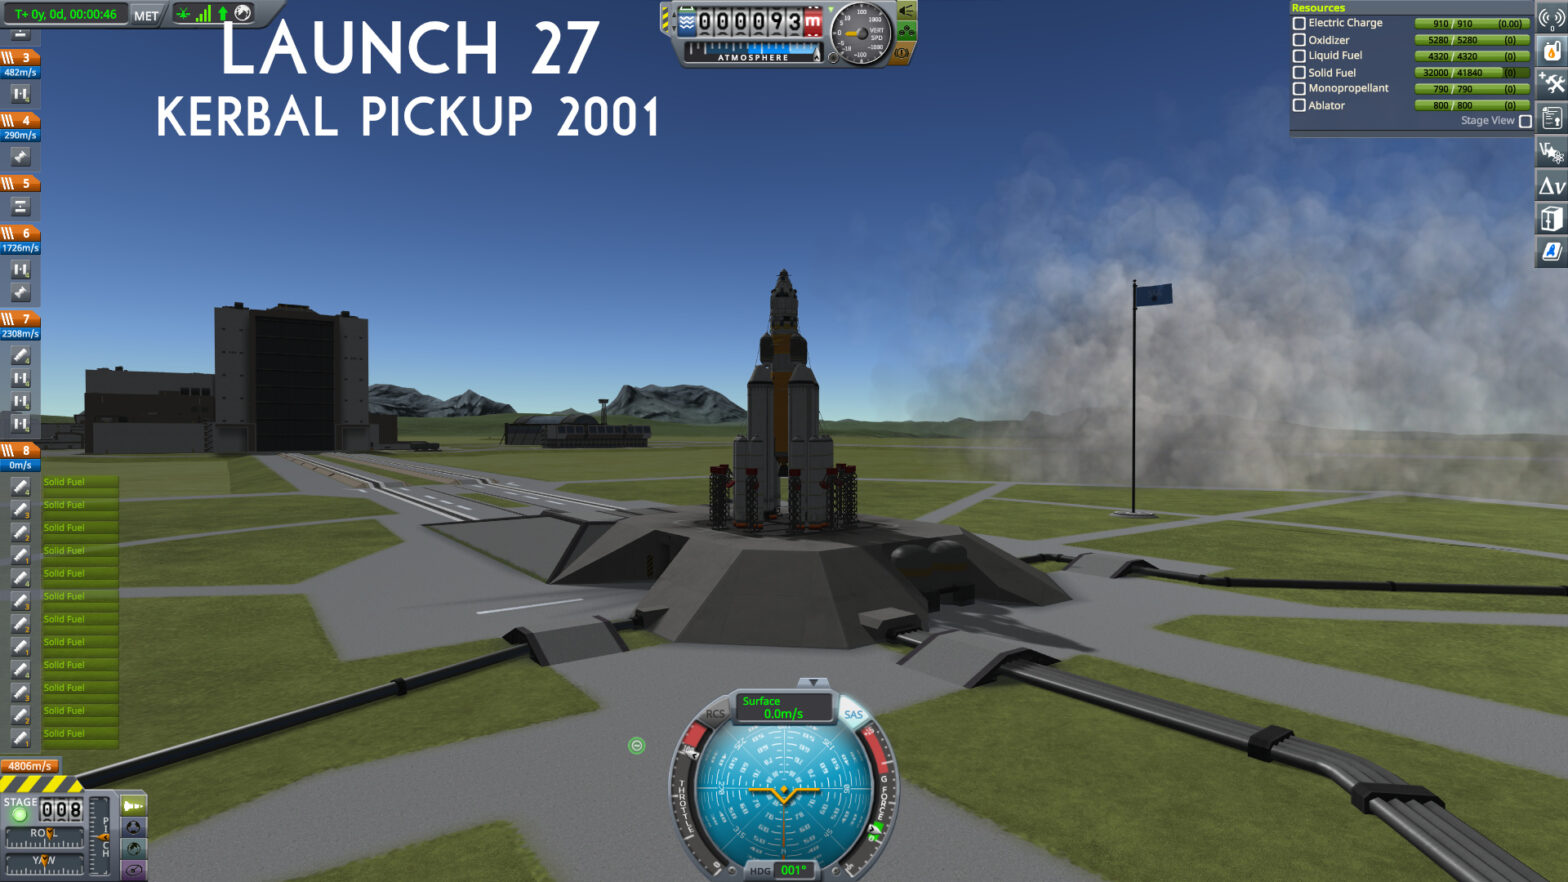 Launch 27 – Kerbal Pickup 2001